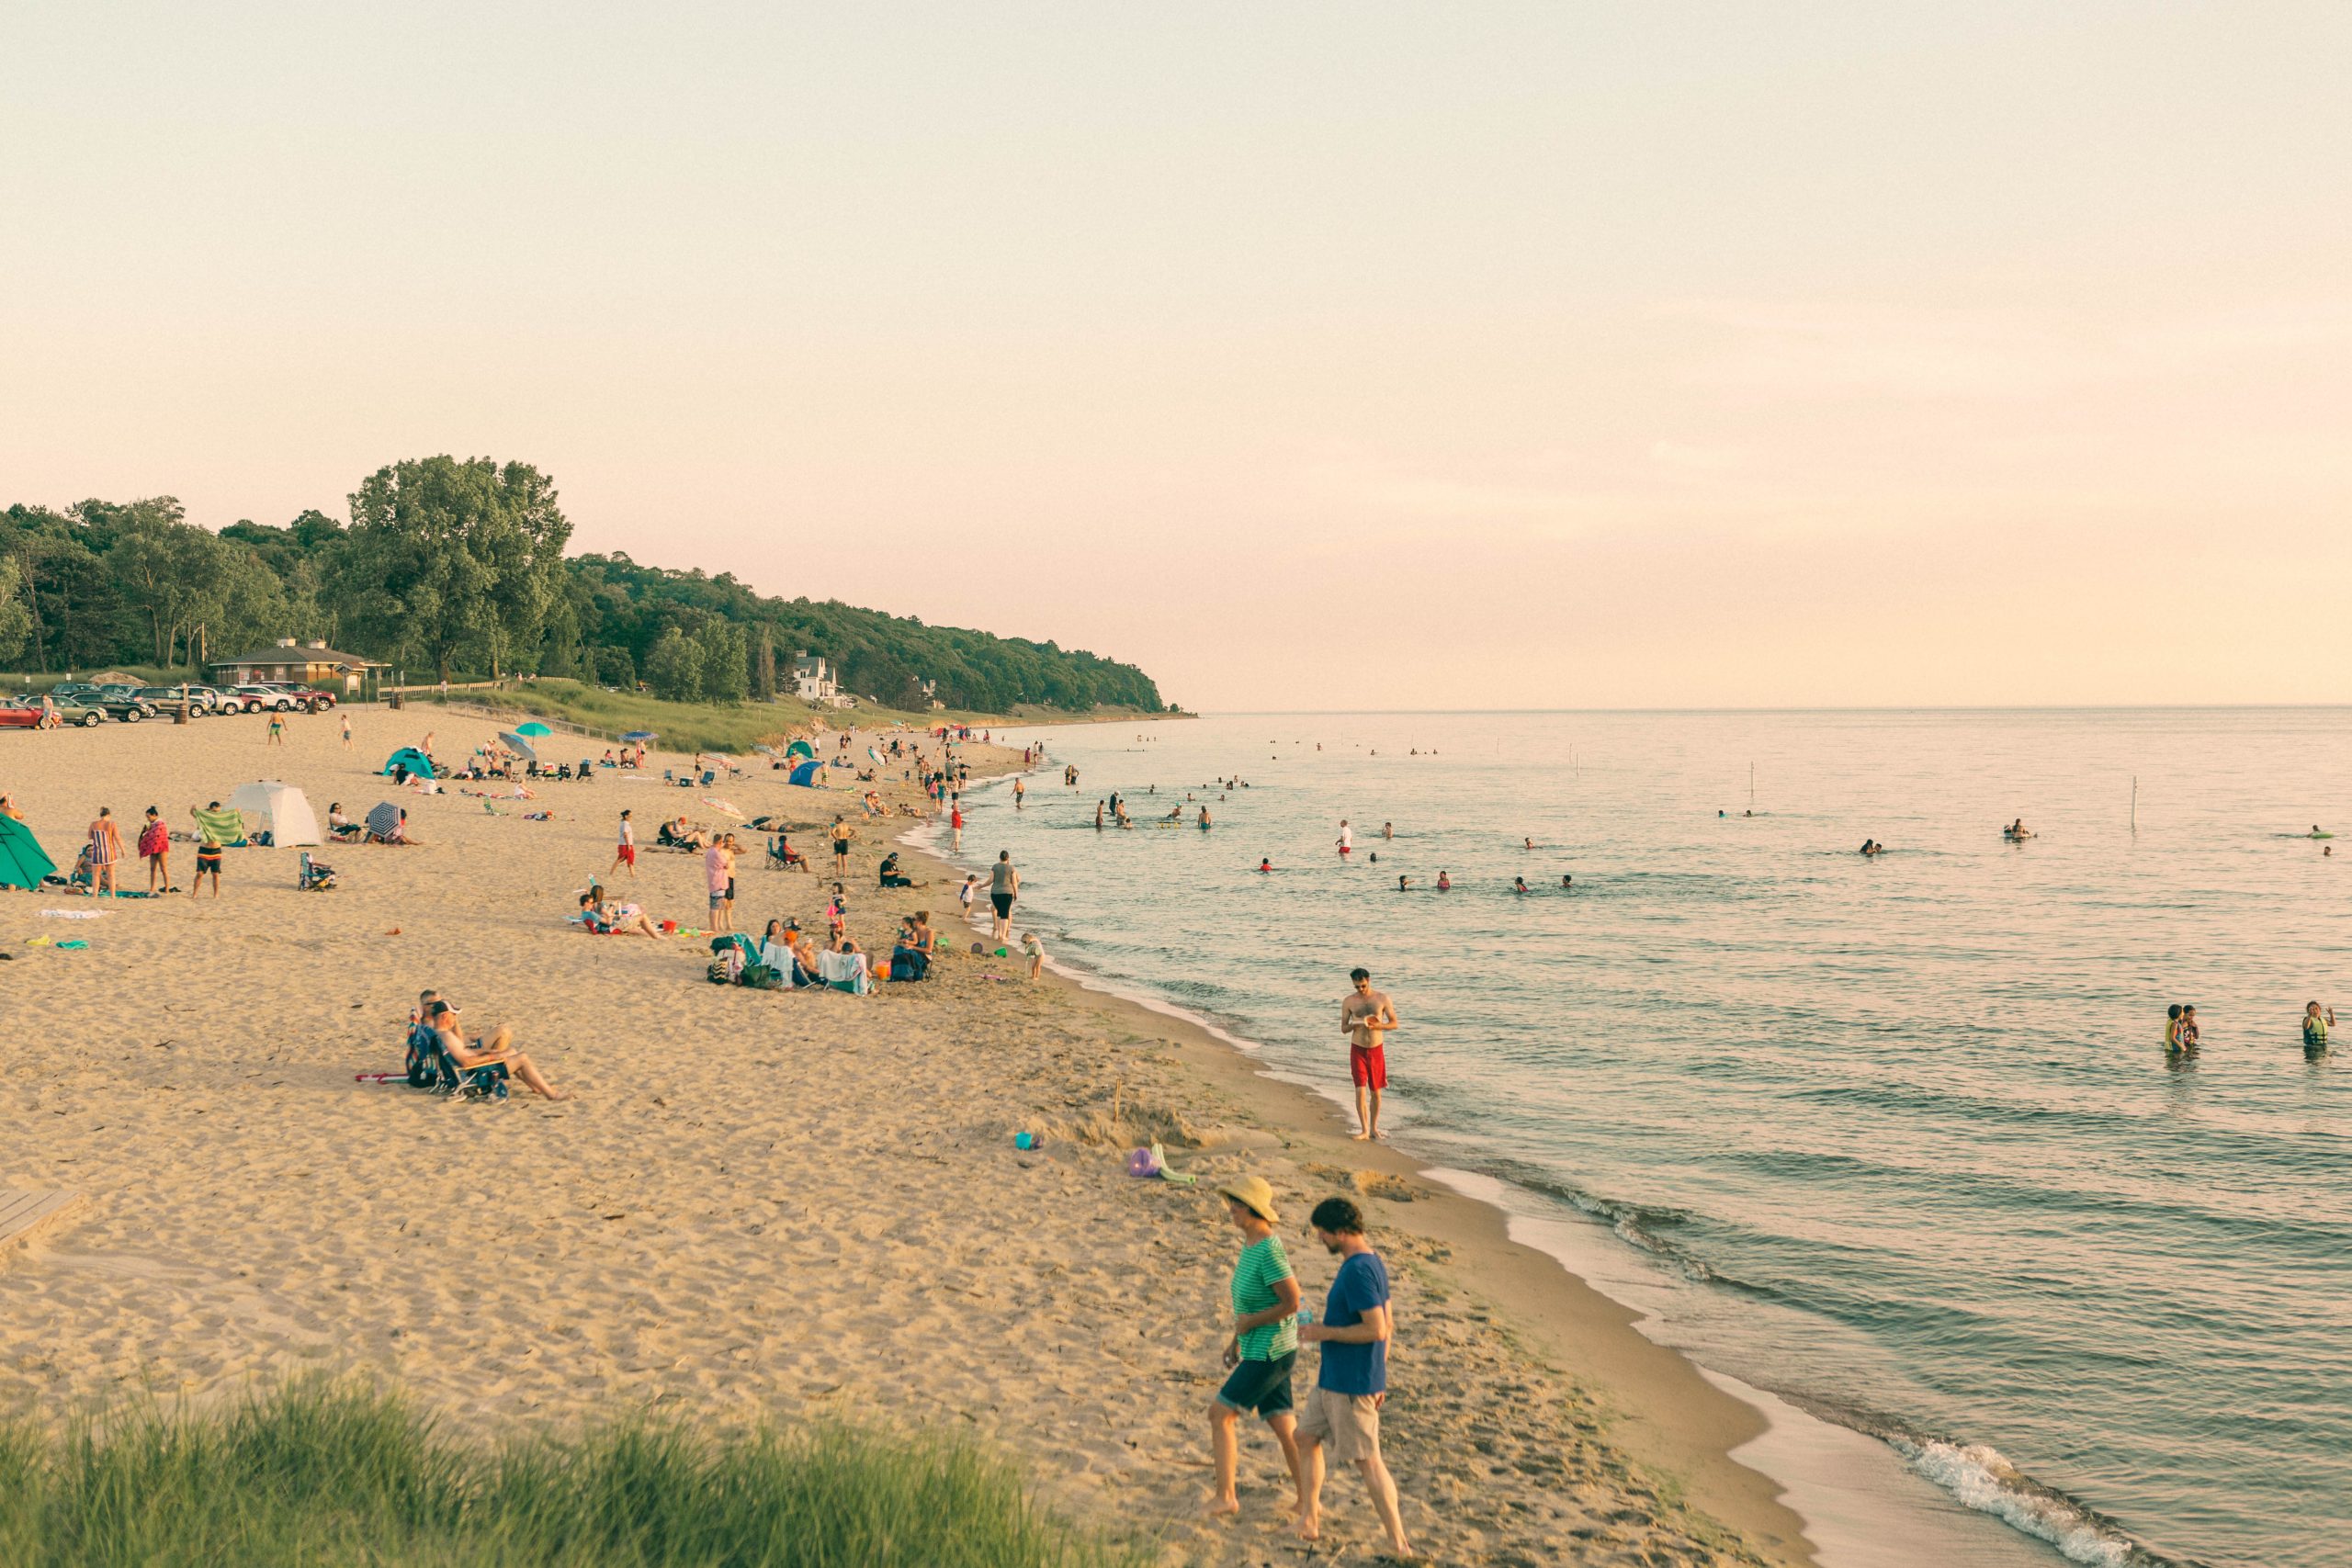 Crowded Lake Michigan beach.